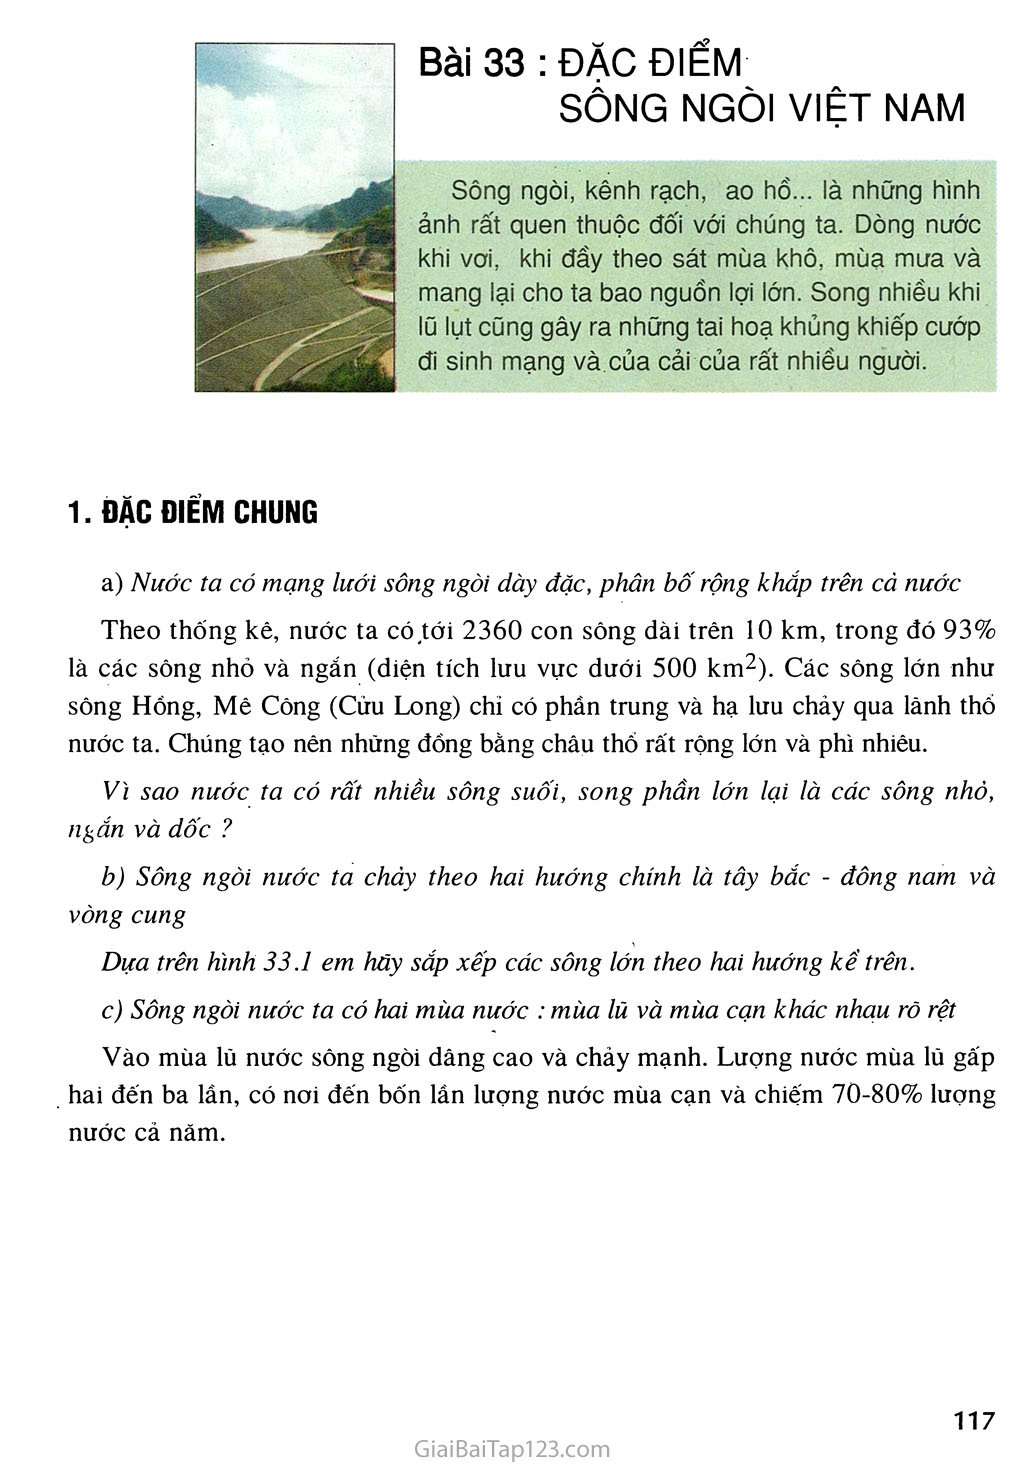 Bài 33. Đặc điếm sông ngòi Việt Nam trang 1